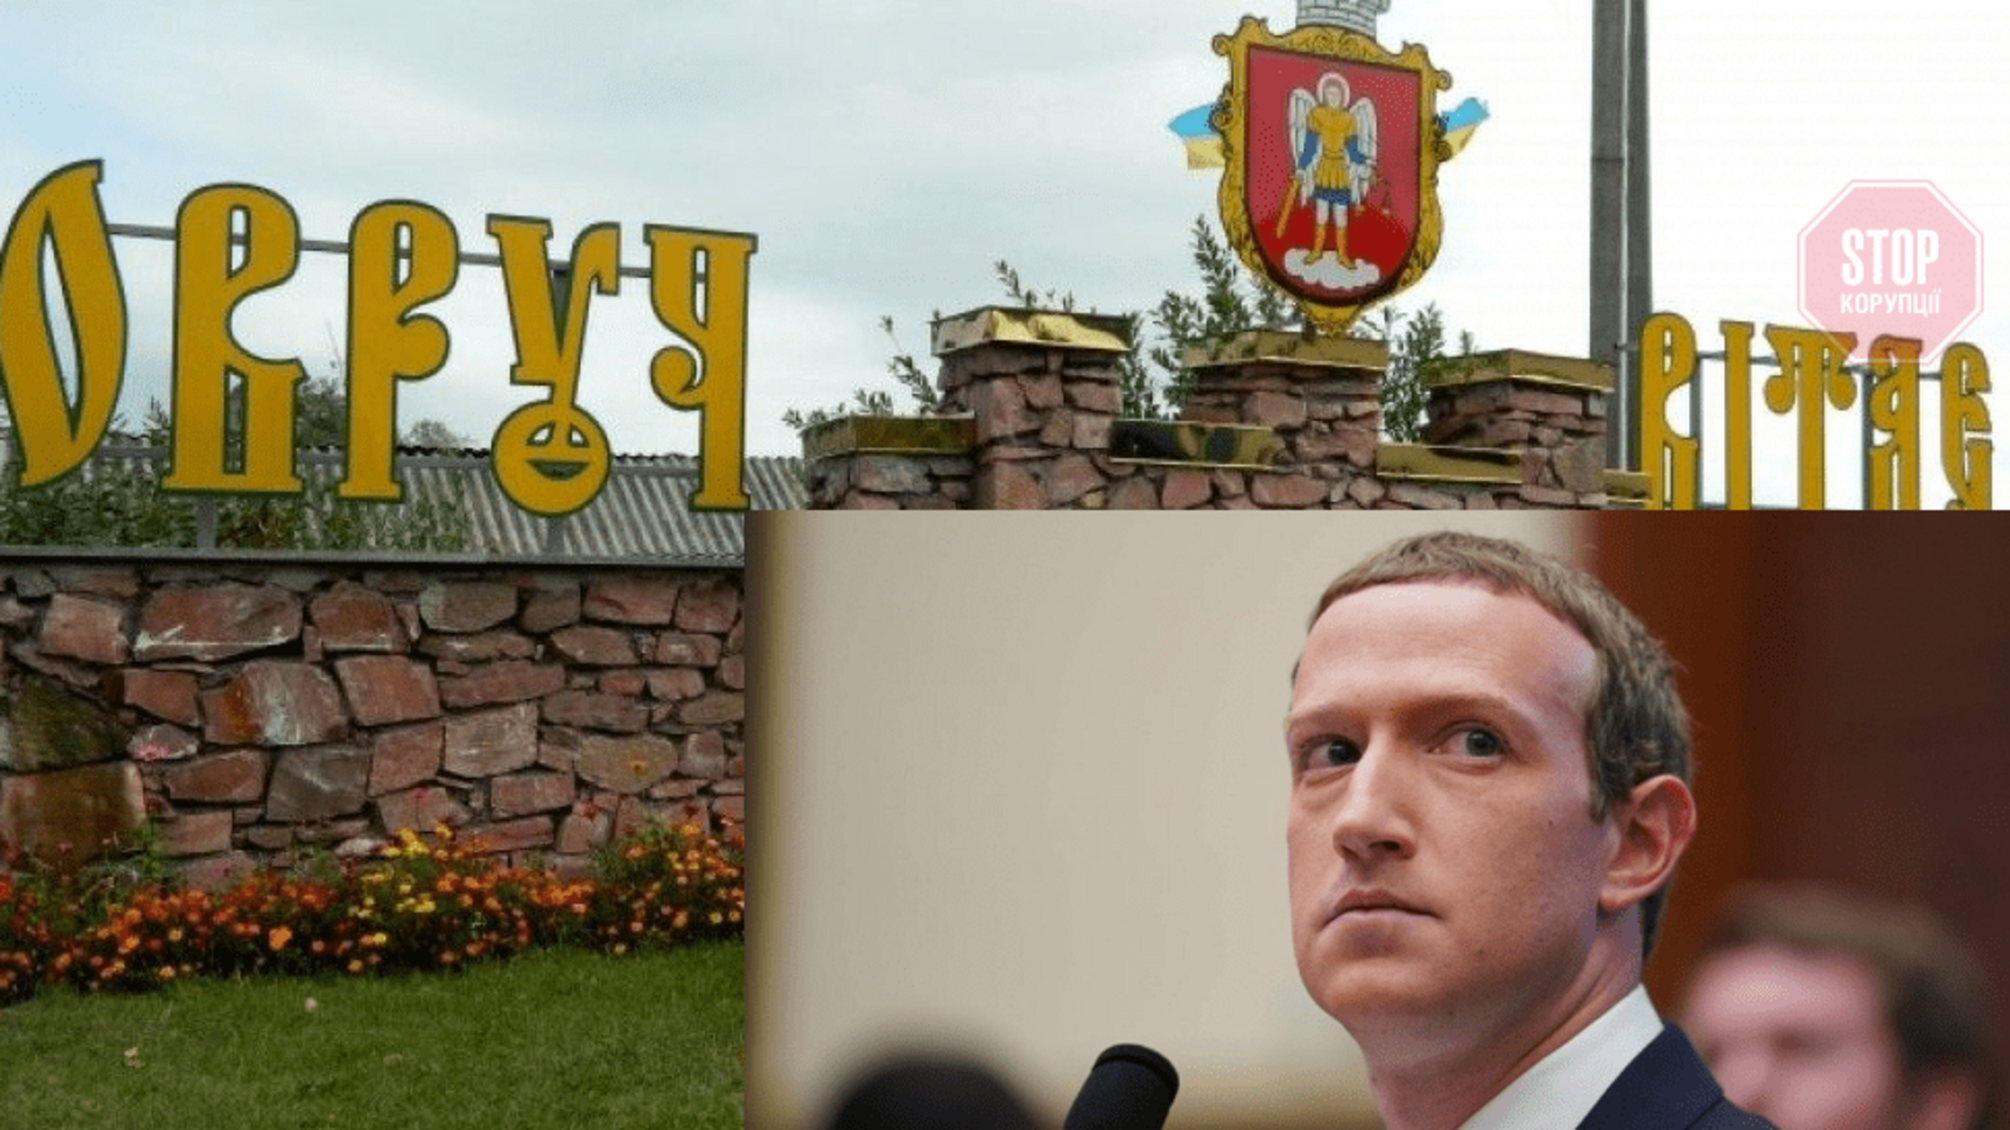 Марк Цукерберг відповість за дописи у Facebook: його викликали до суду на Житомирщині